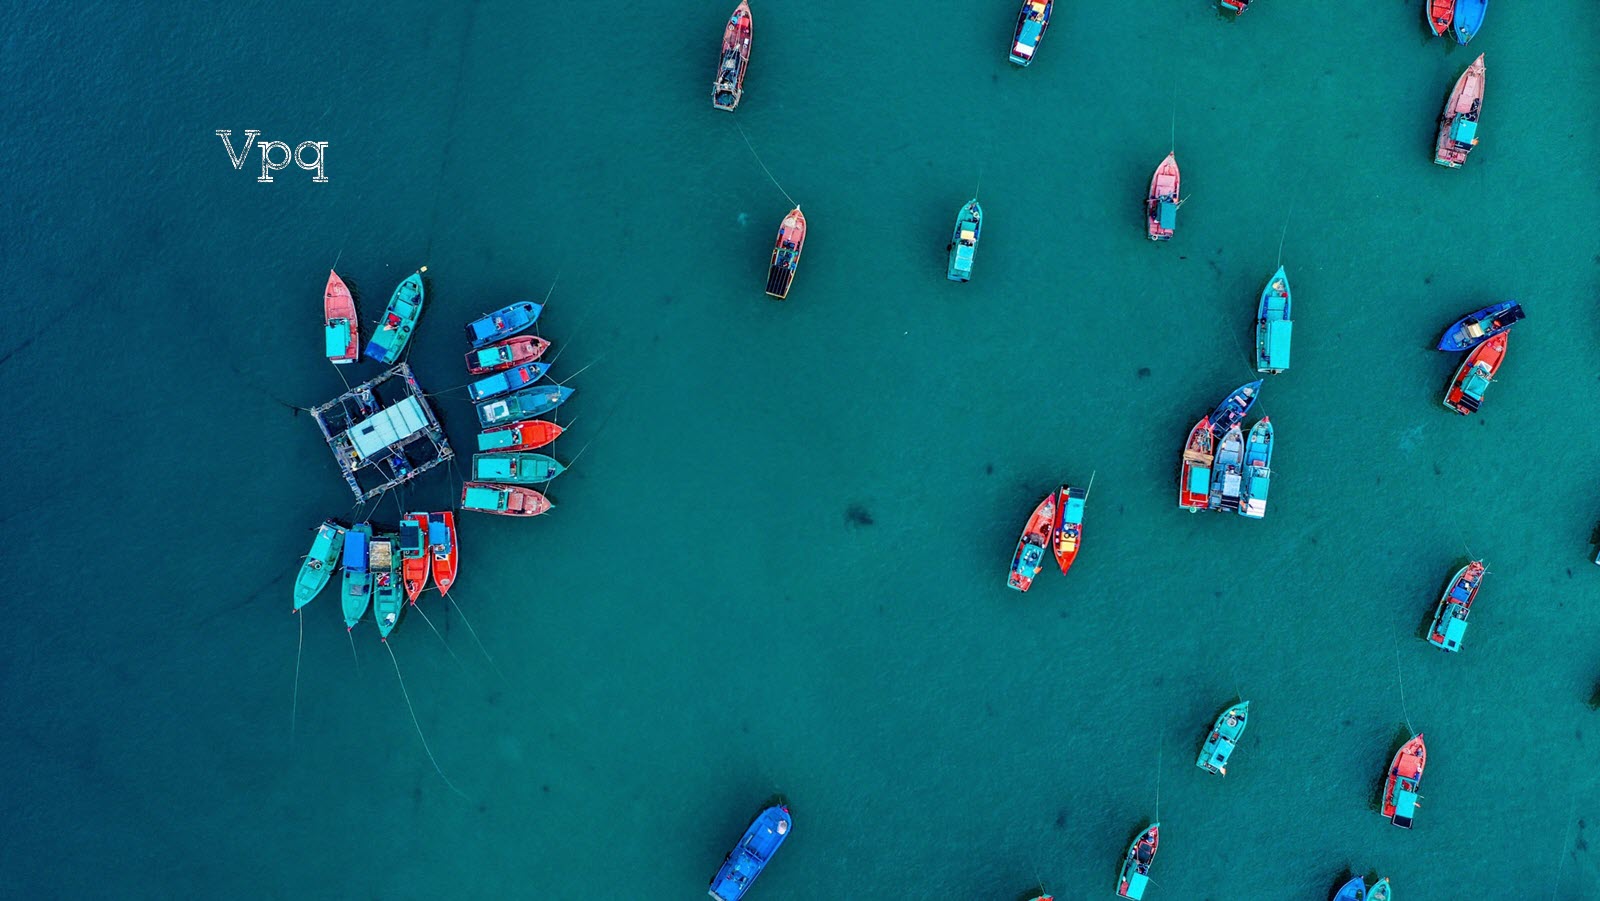 Hình ảnh những chiếc thuyền của ngư dân làng chài trên biển Phú Quốc